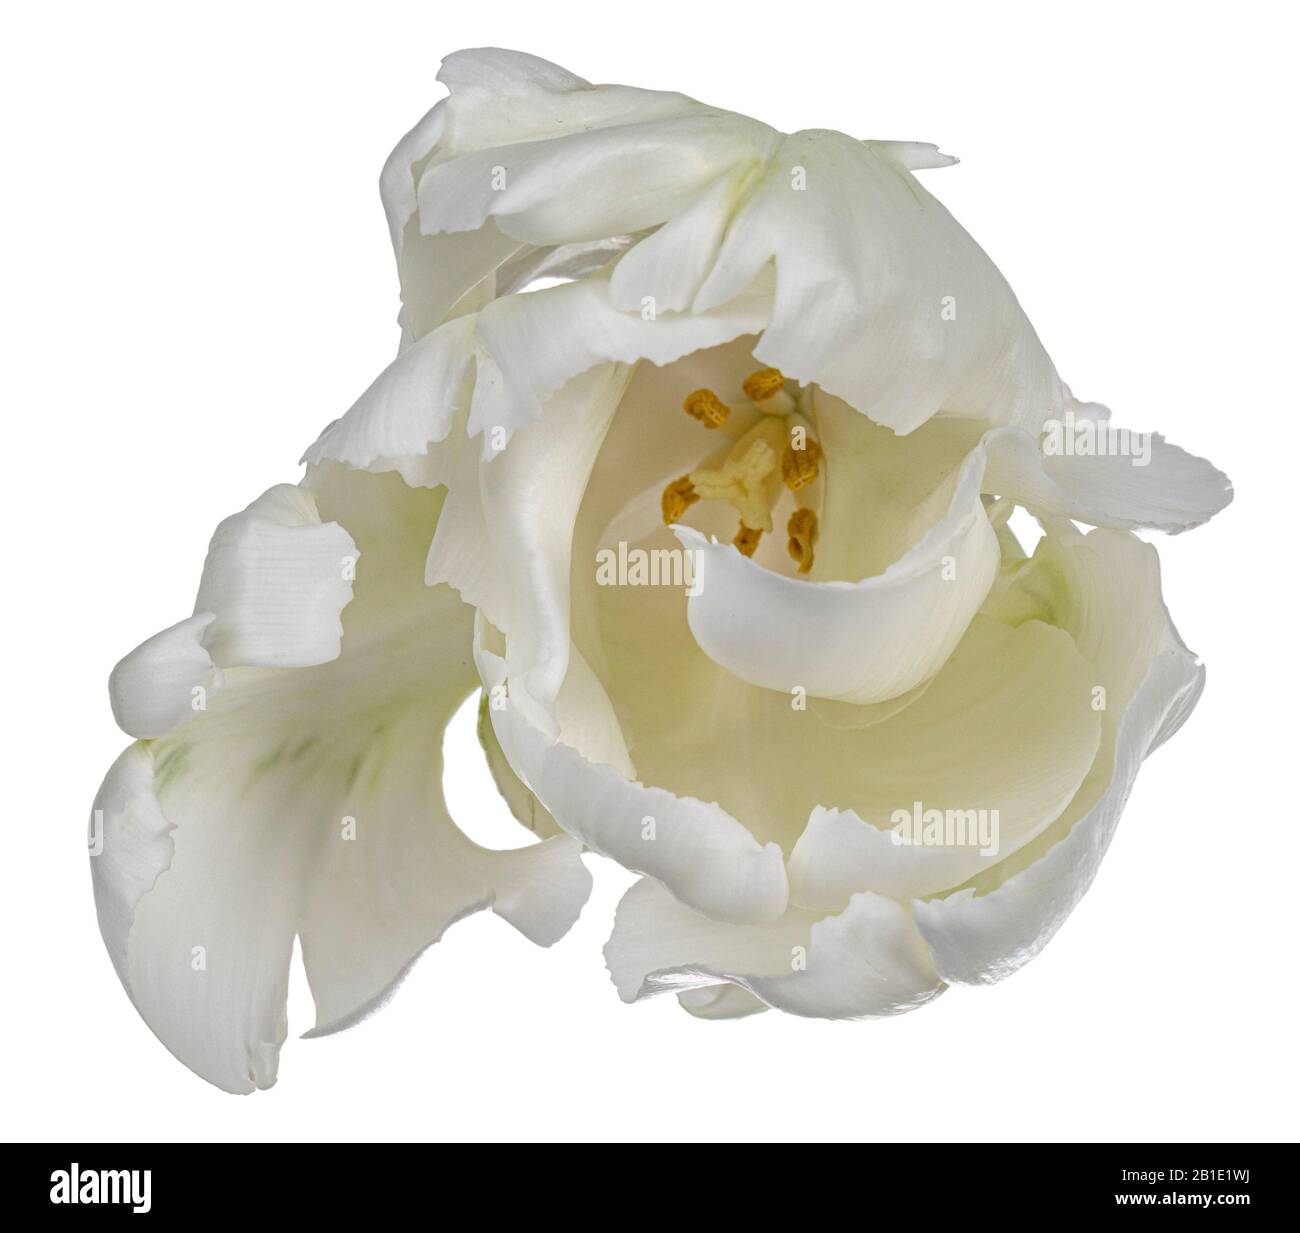 Vue de dessus rapprochée d'une seule fleur de tulipe blanche en ruffée, isolée sur fond blanc. Banque D'Images